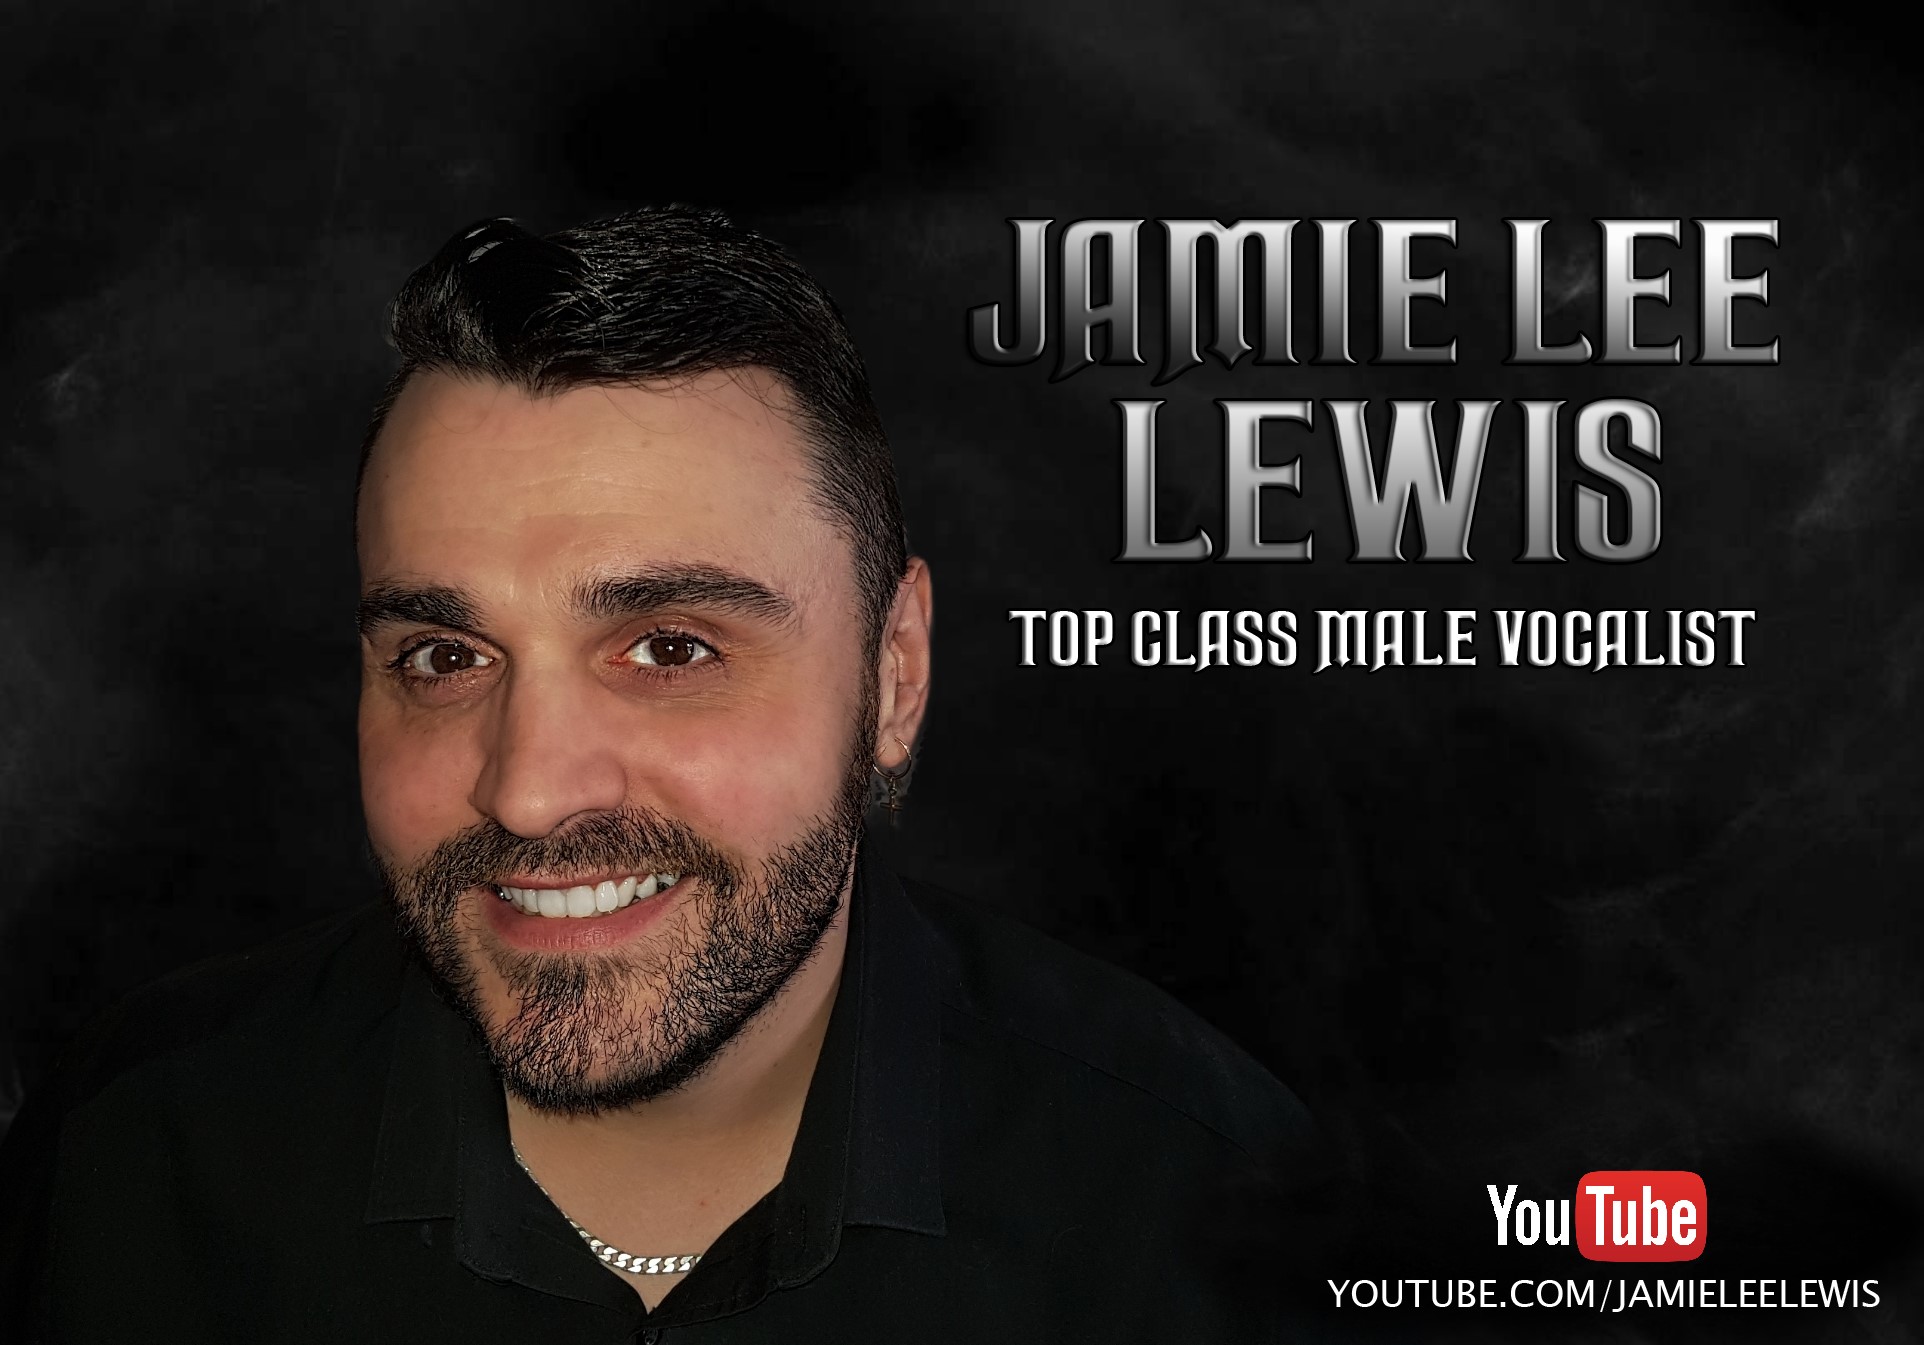 Jamie Lee Lewis